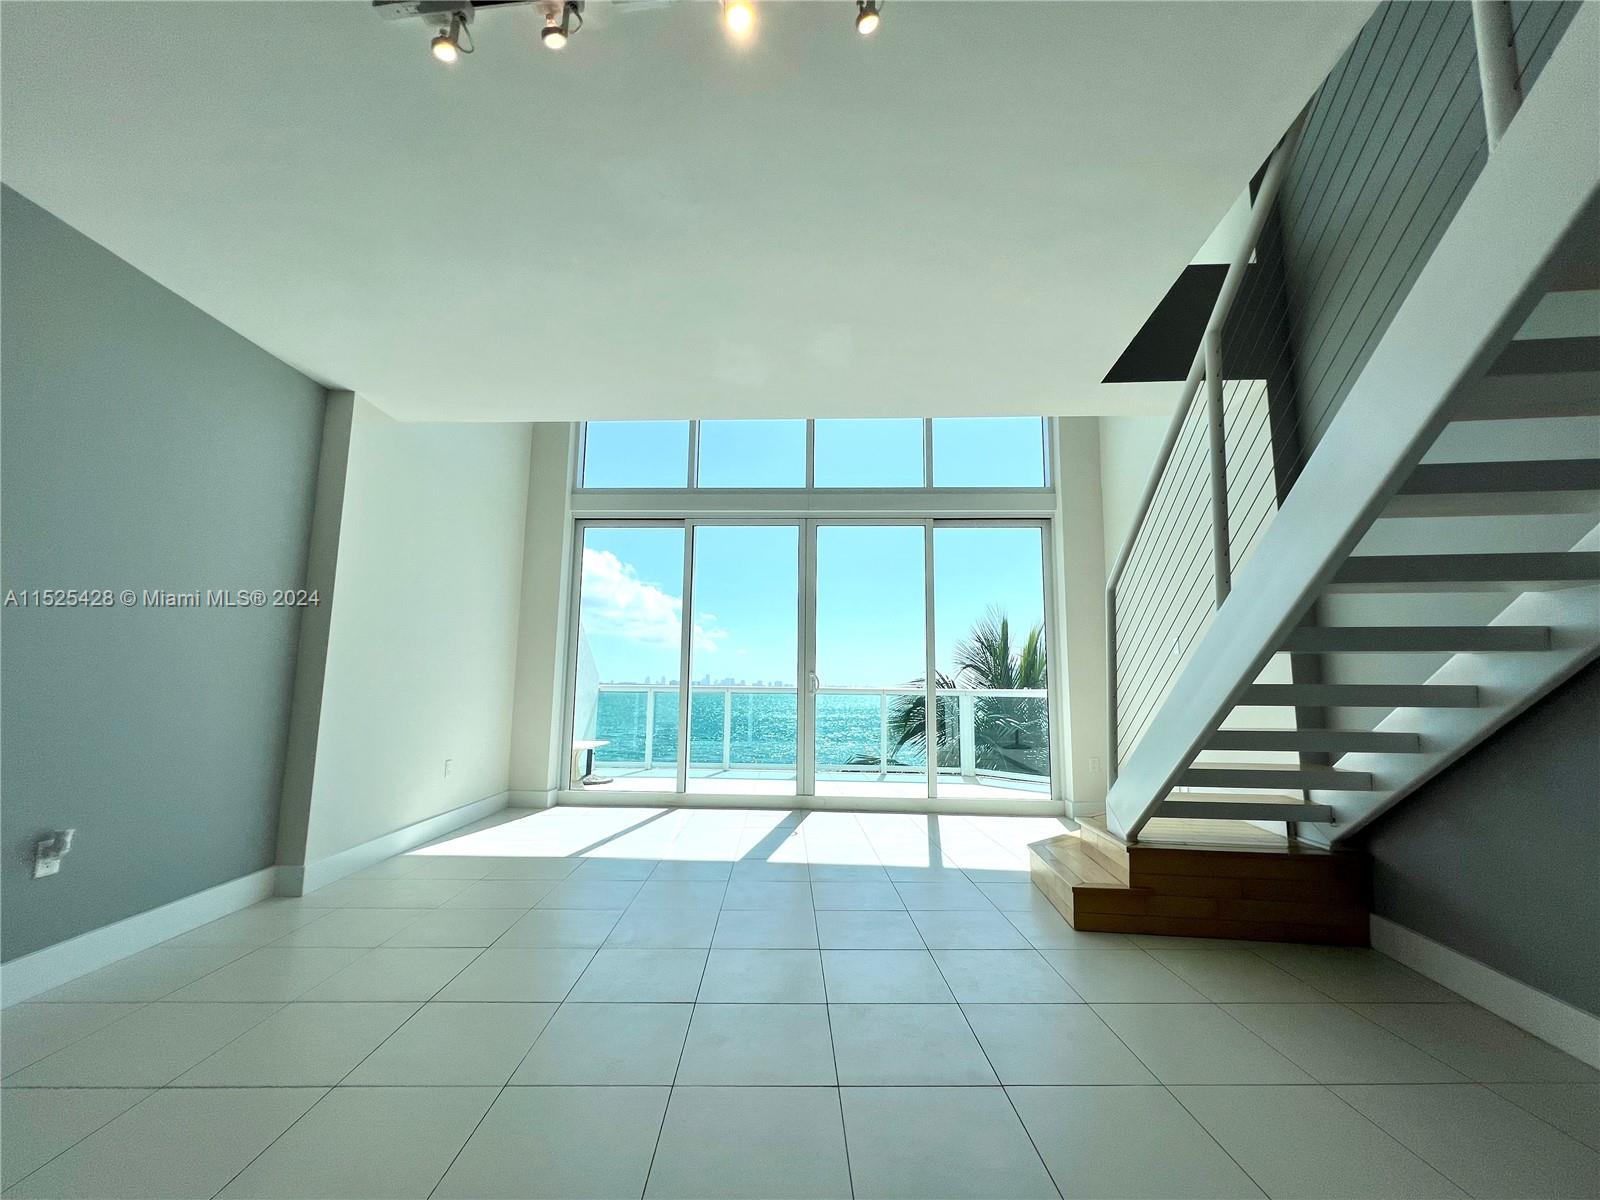 Rental Property at 2000 Bay Dr 409, Miami Beach, Miami-Dade County, Florida - Bedrooms: 2 
Bathrooms: 3  - $4,800 MO.